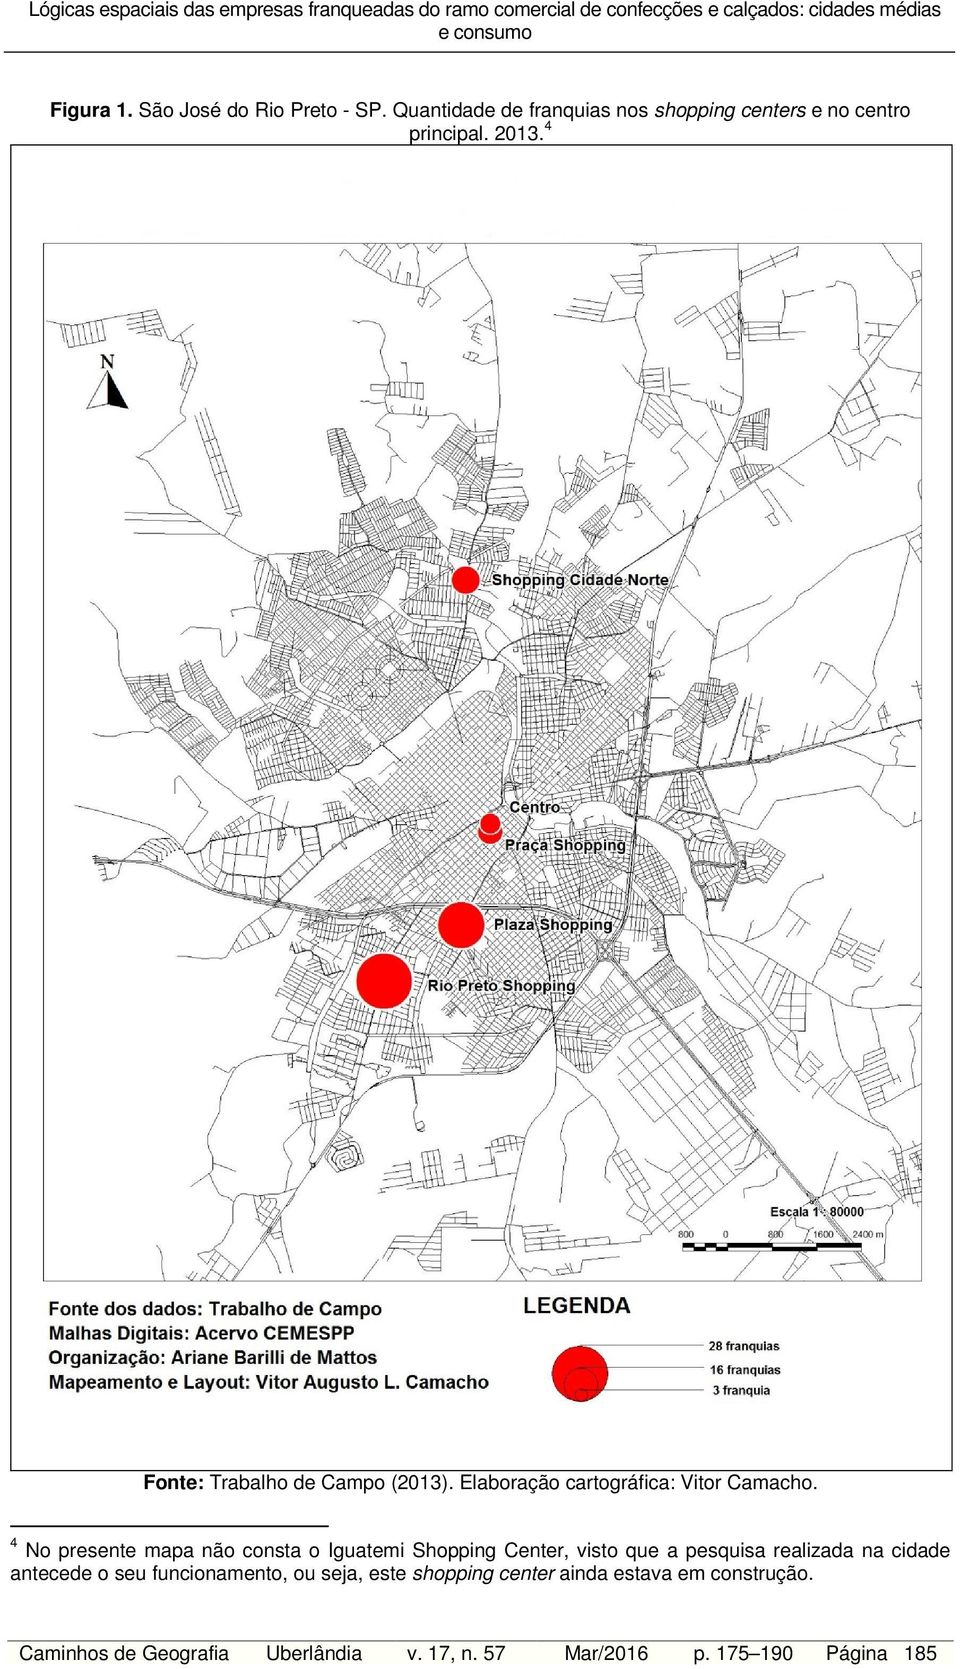 4 No presente mapa não consta o Iguatemi Shopping Center, visto que a pesquisa realizada na cidade antecede o